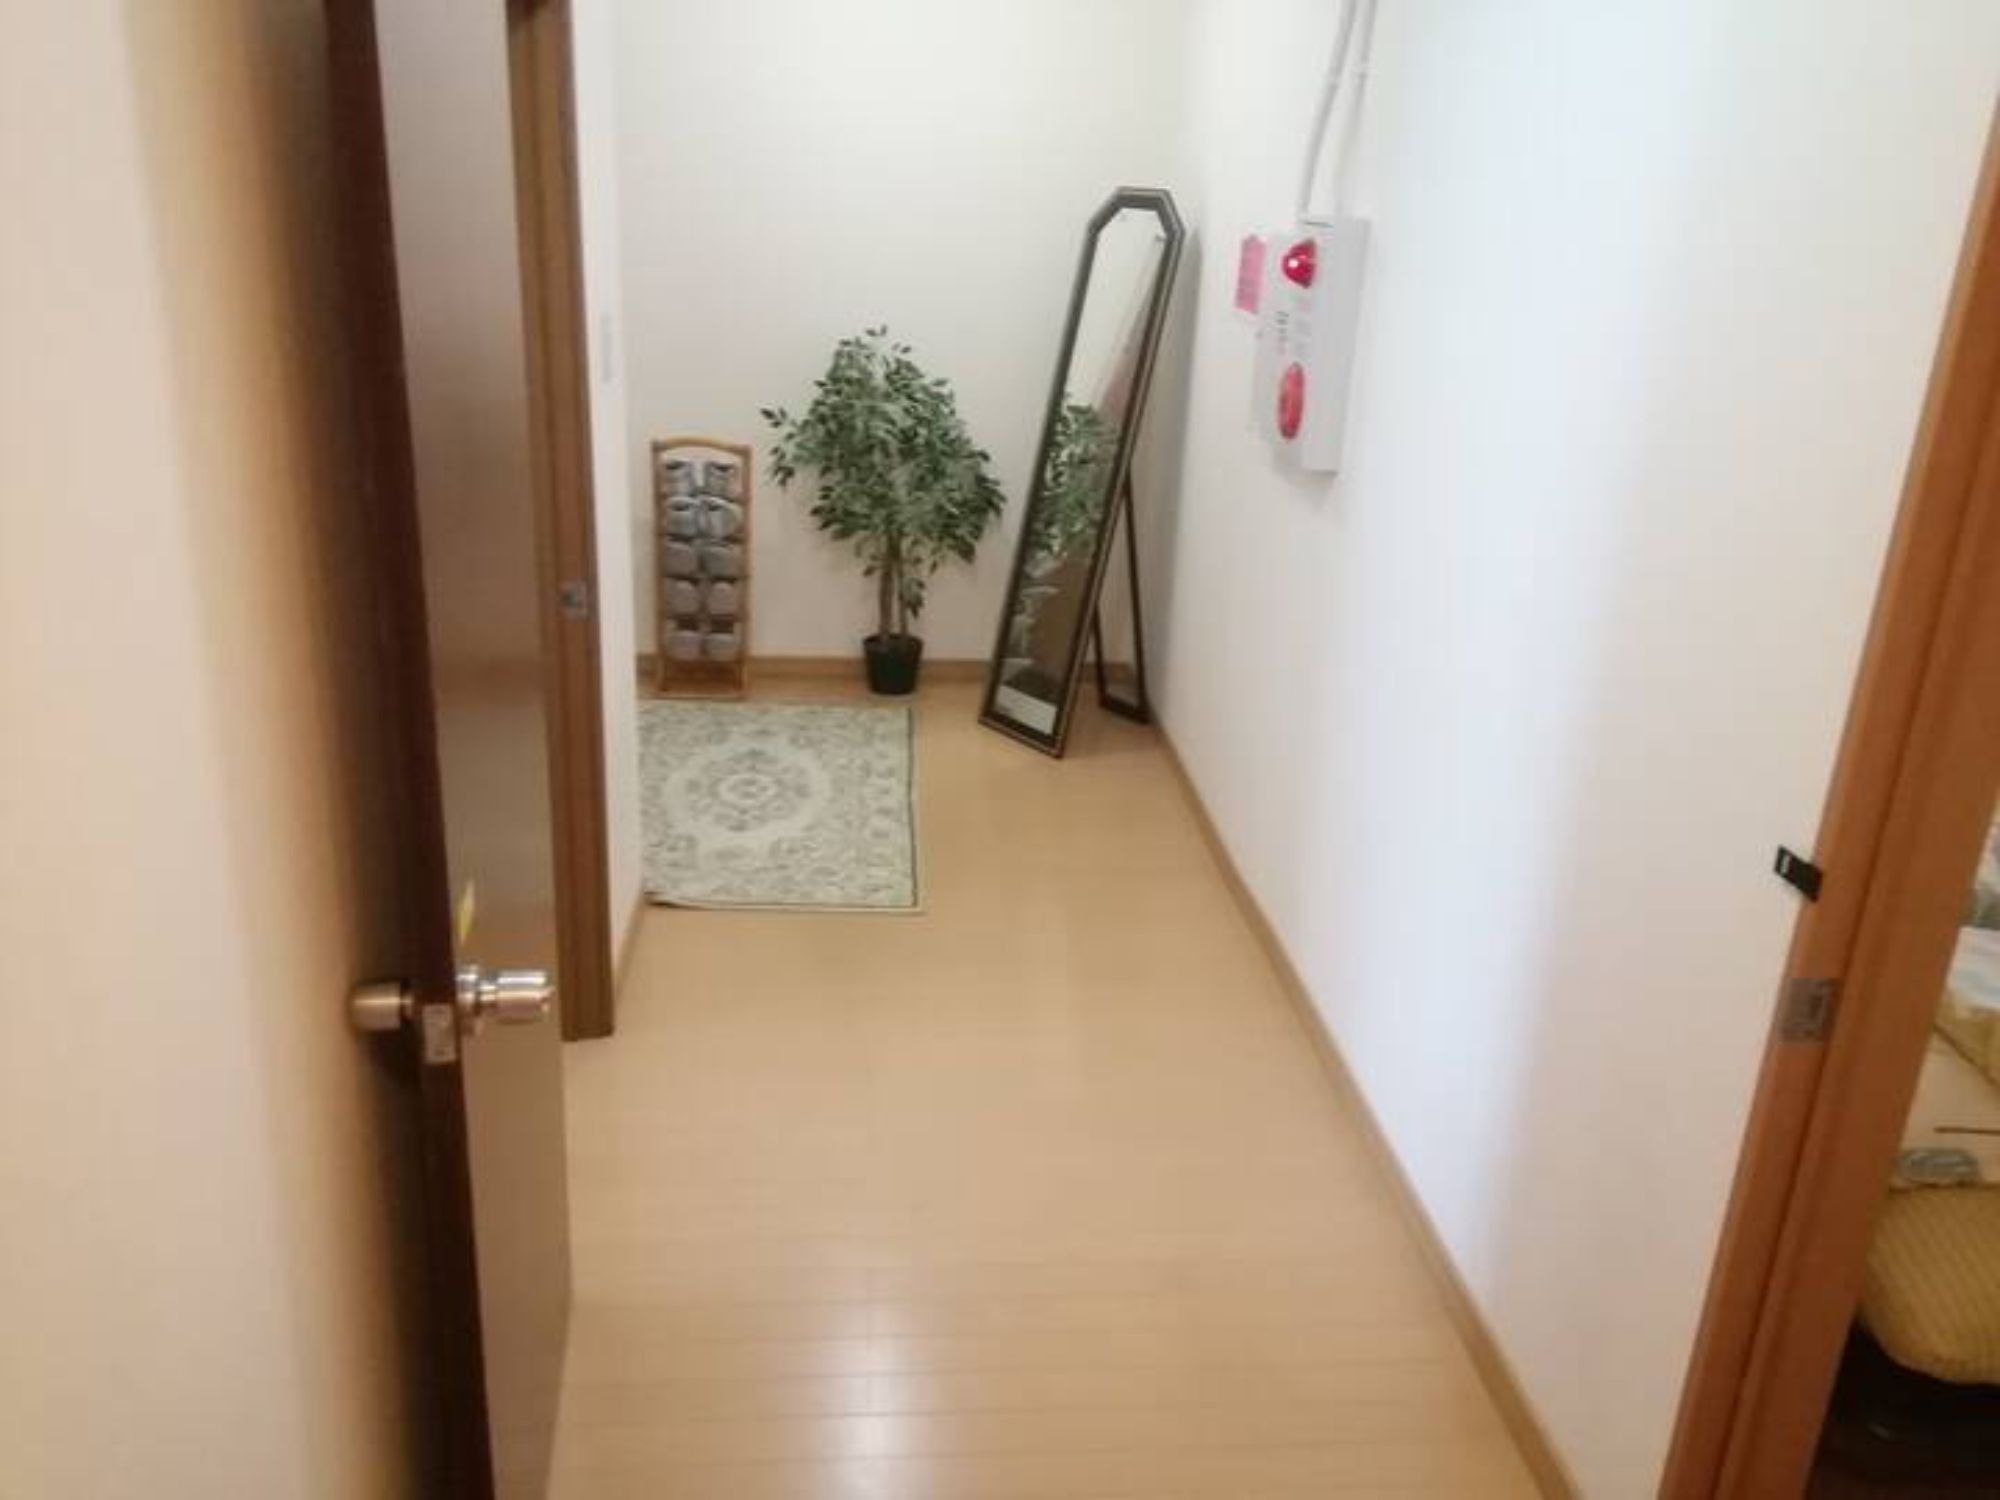 函館駅から歩いて5分、1人〜8人まで快適に利用できる民泊施設